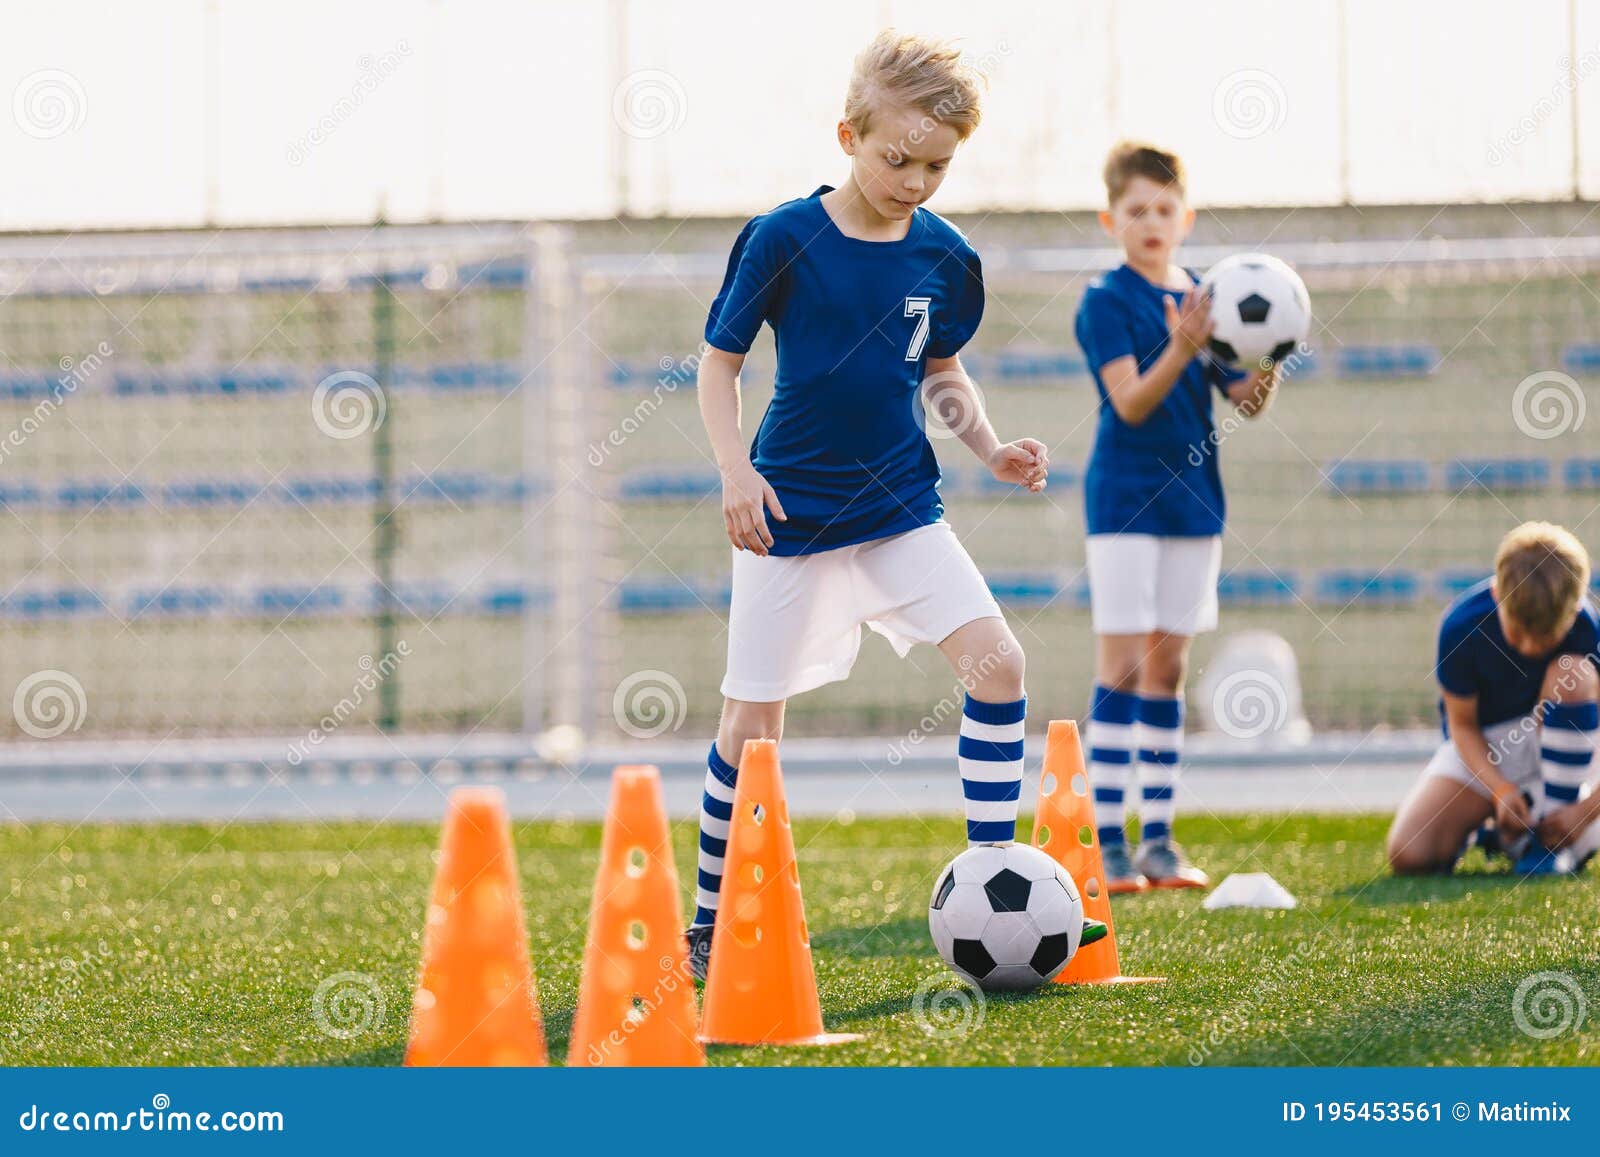 Futebol nosso de cada dia: é possível jogar bola e também ser um corredor?, treinos